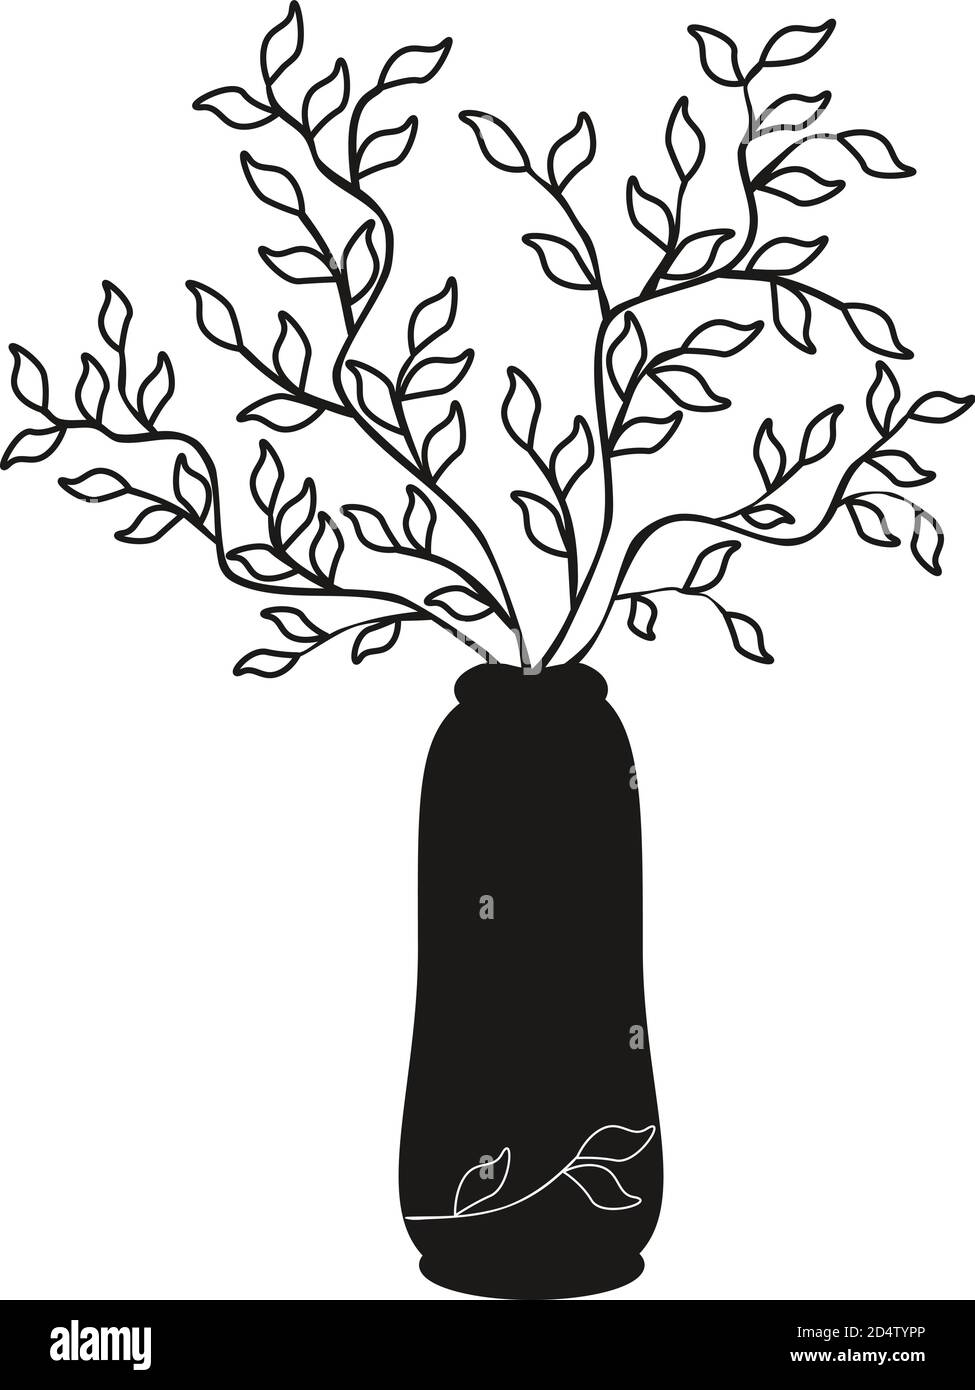 Vectorisation illustration simple branches d'arbre noir dans un vase sur fond blanc. Croquis pour livres de coloriage. Imprimer sur papier, tissu, céramique. Pat Illustration de Vecteur